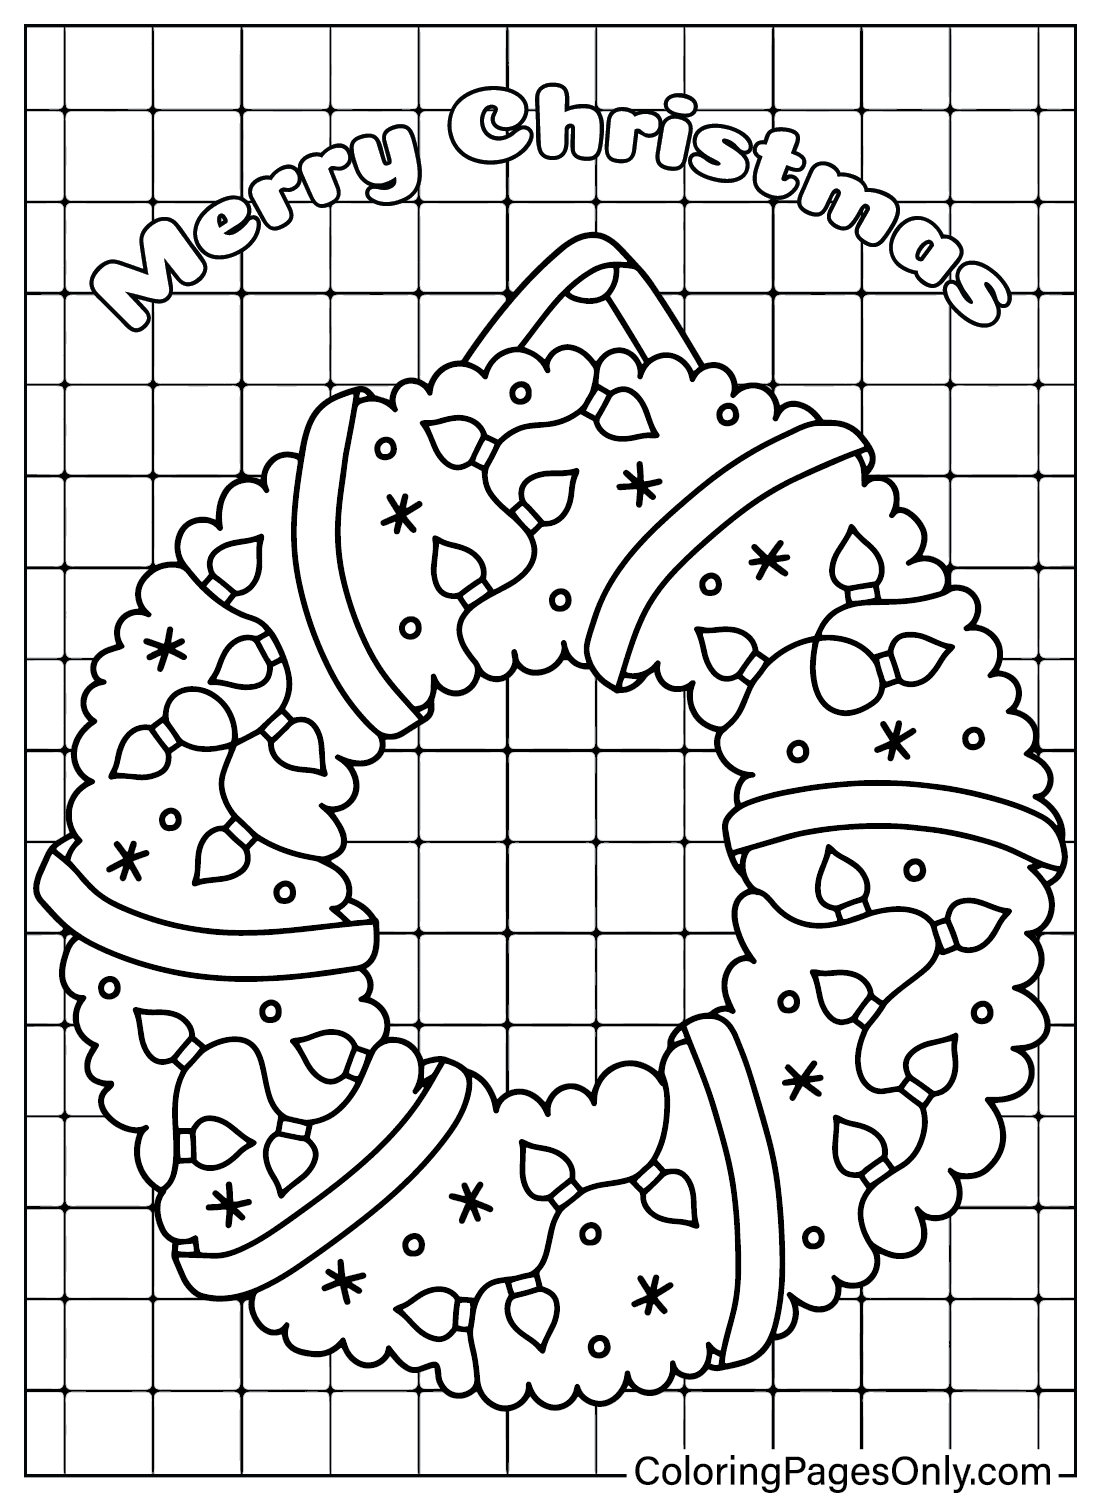 Página para colorear de corona de Navidad para imprimir gratis de Corona de Navidad